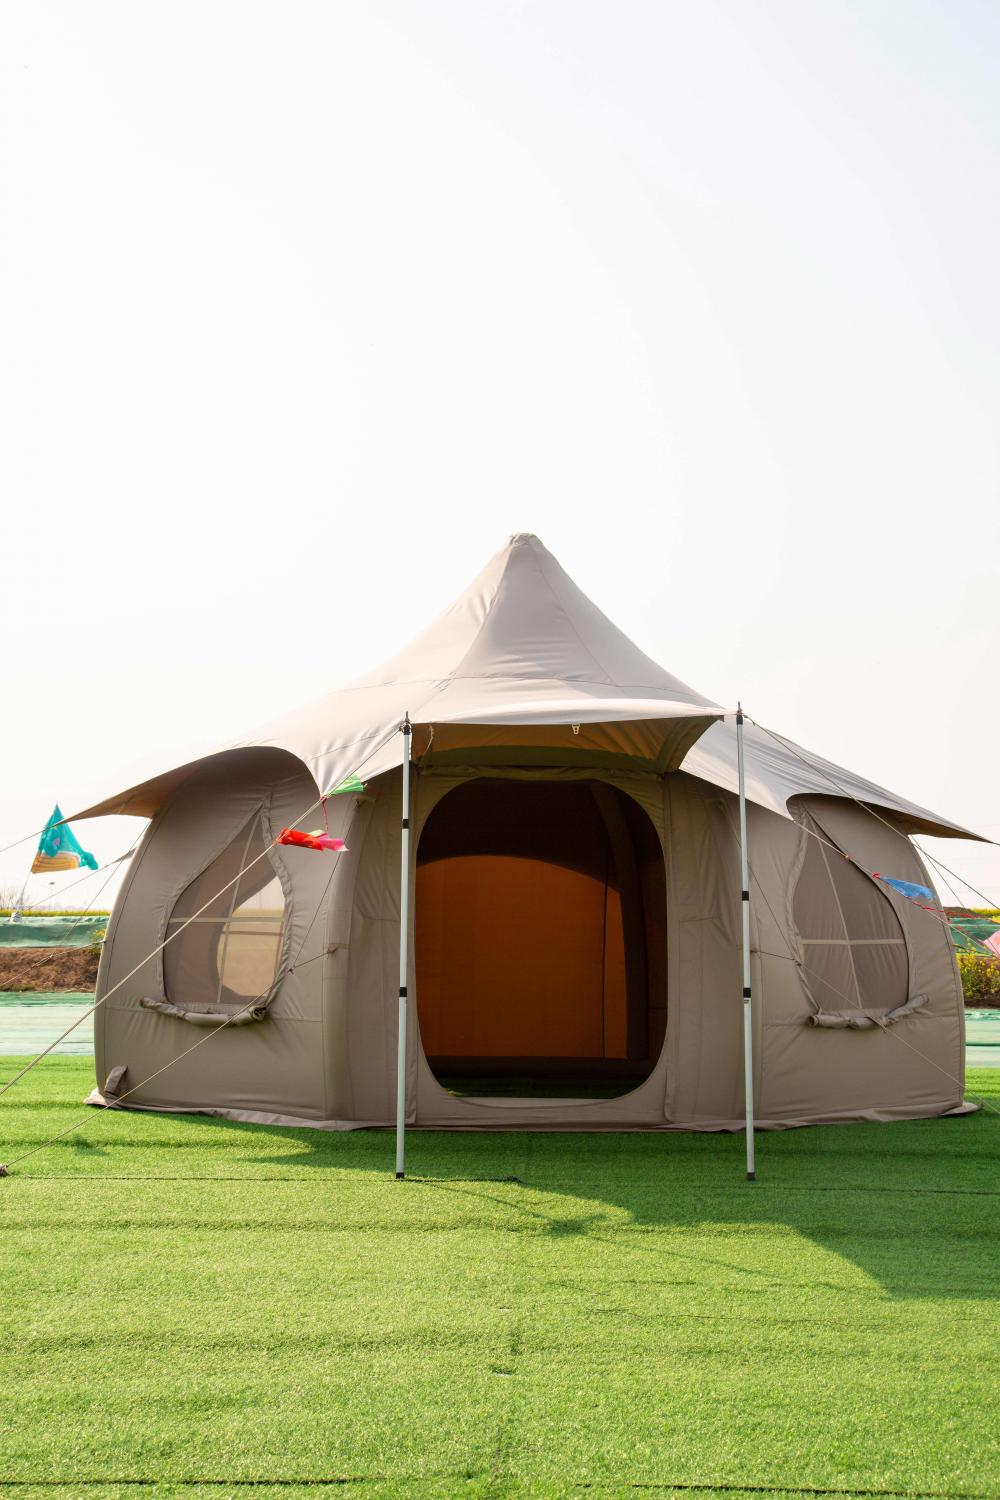 インフレータブルロータス型のキャンプテント